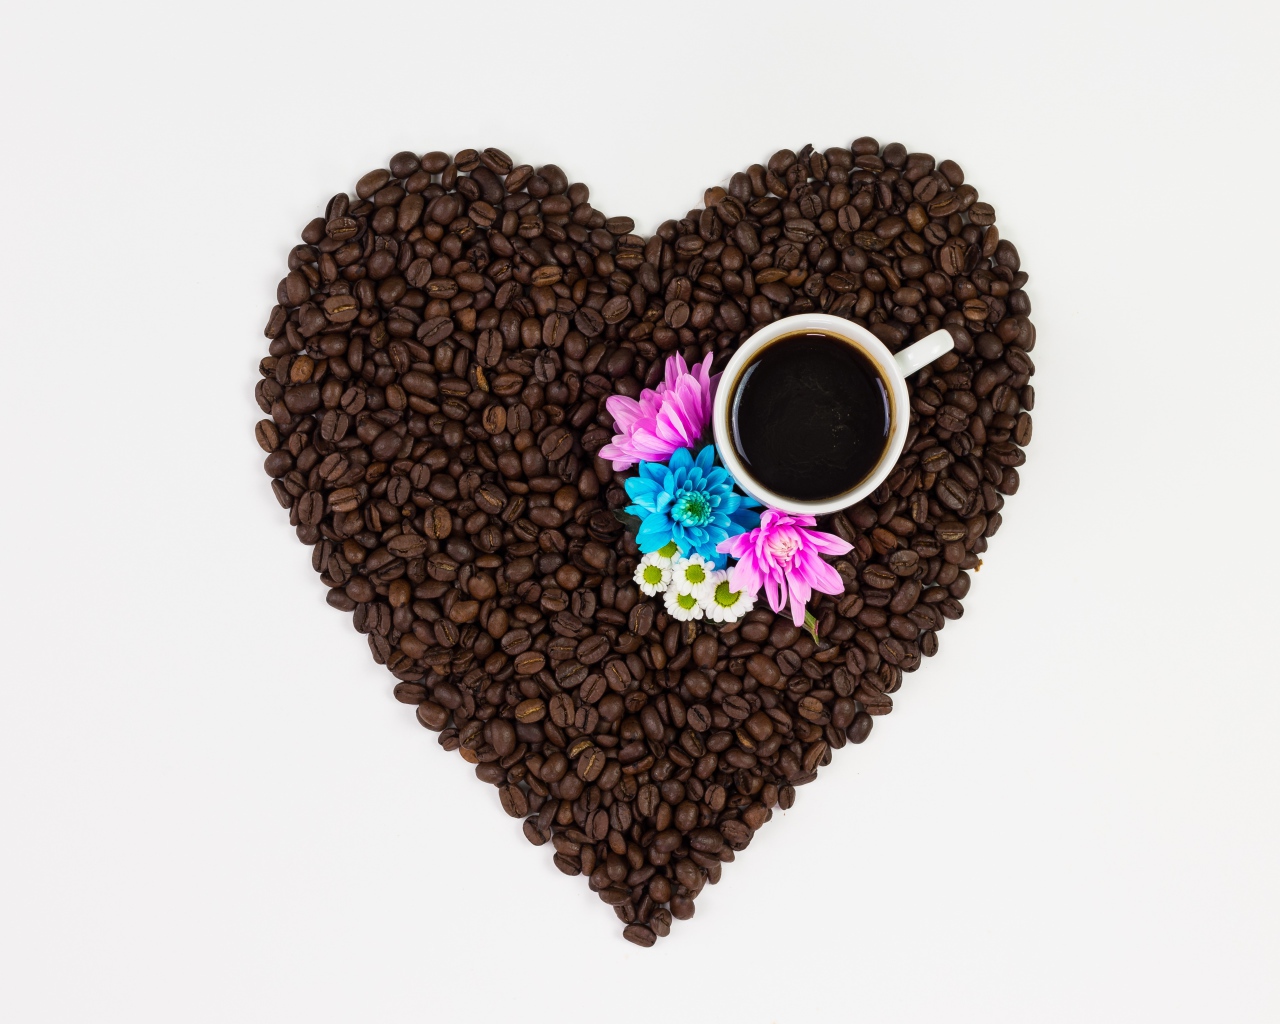 Сердце из кофейных зерен с чашкой на белом фоне